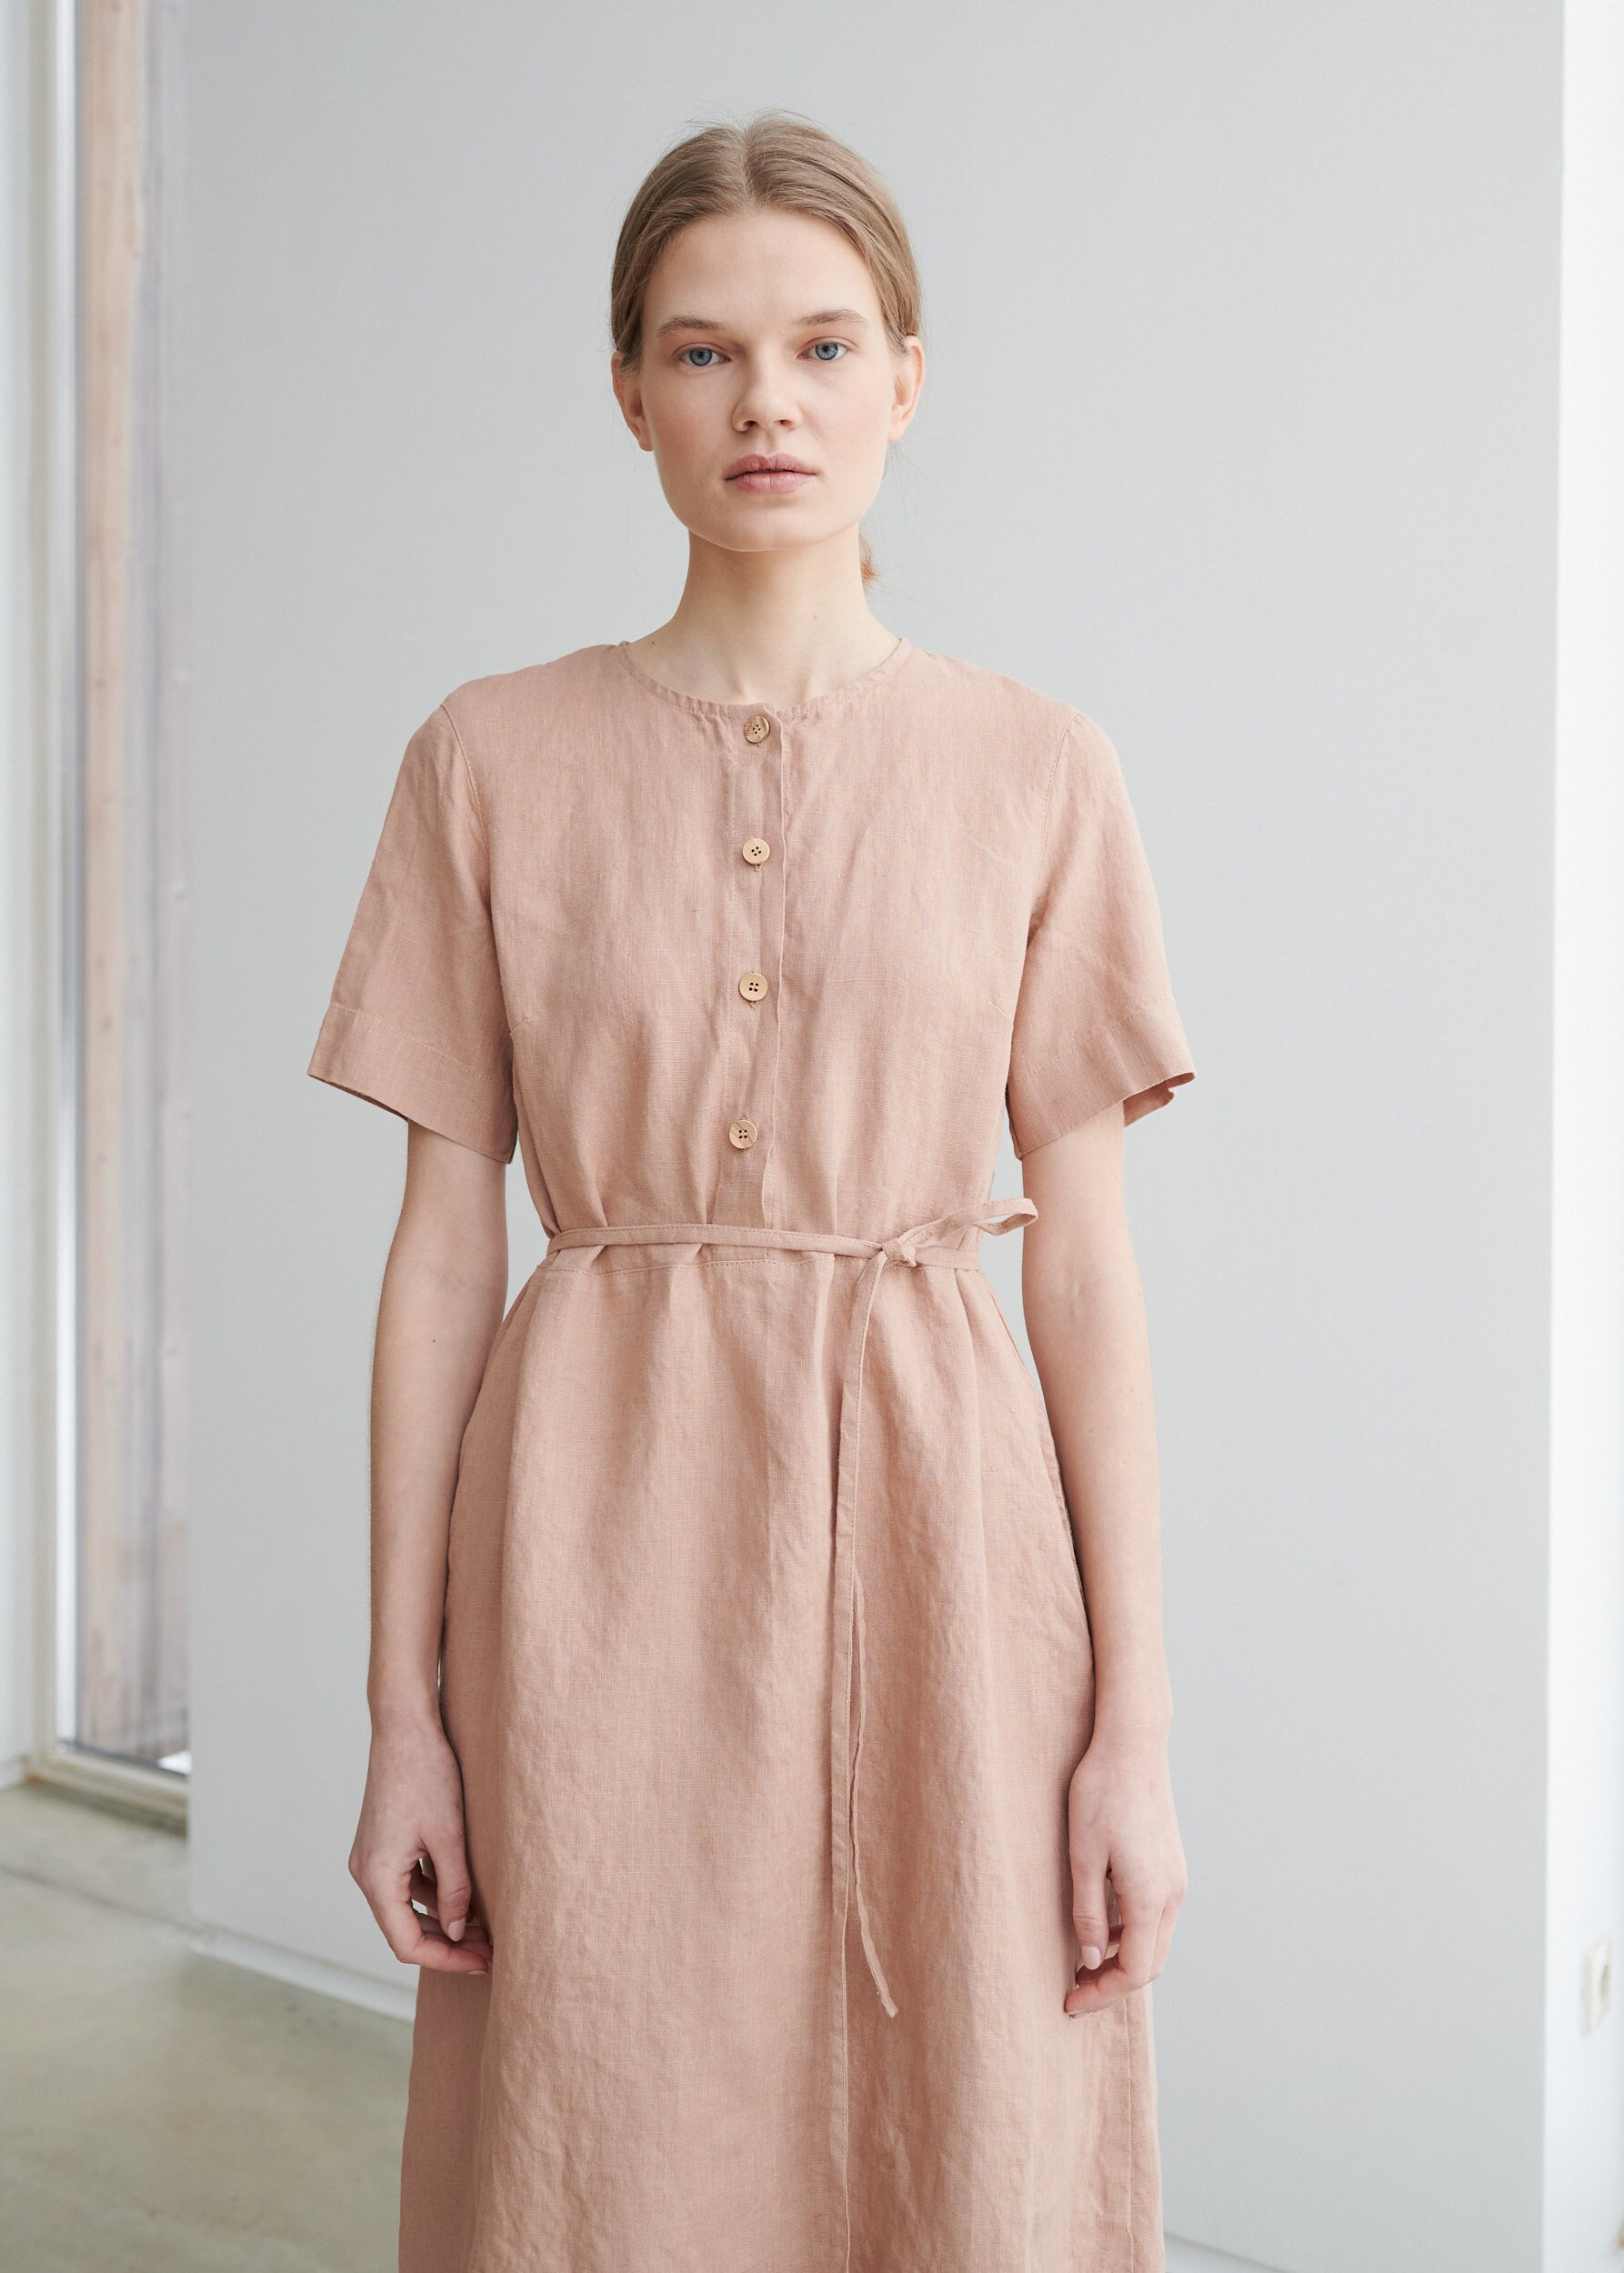 Bloom Dusty Peach - Schlichtes Leinenkleid Sommerkleid Alltagskleid Freizeitkleid Umstandskleid von Linenfox